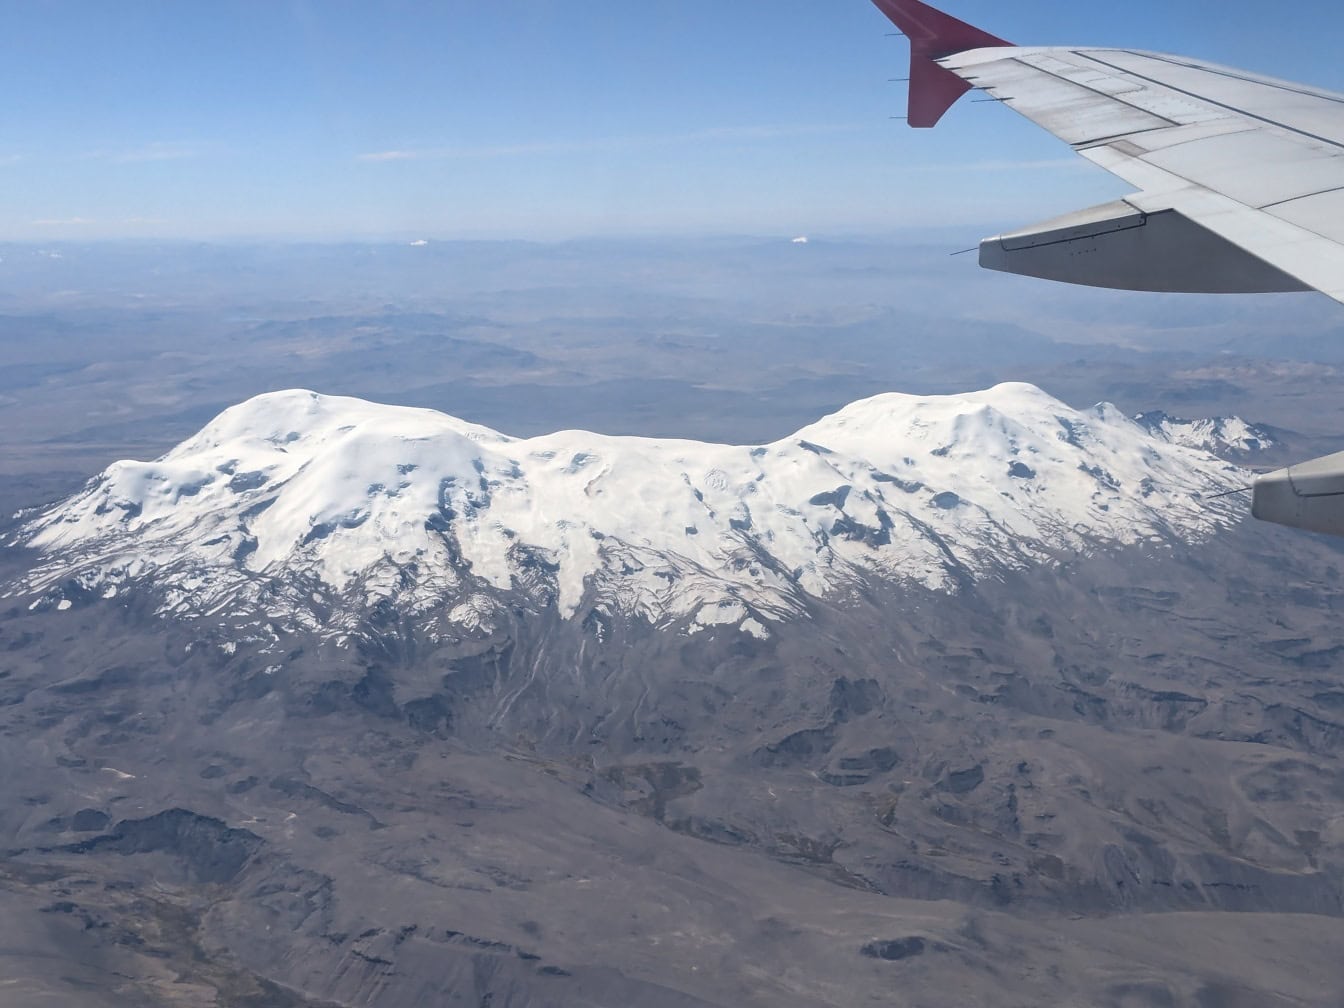 Một bức ảnh chụp từ một chiếc máy bay với cánh máy bay ở phía trước và núi lửa Coropuna phủ tuyết nằm ở dãy núi Andes ở phía đông nam-trung tâm Peru ở hậu cảnh